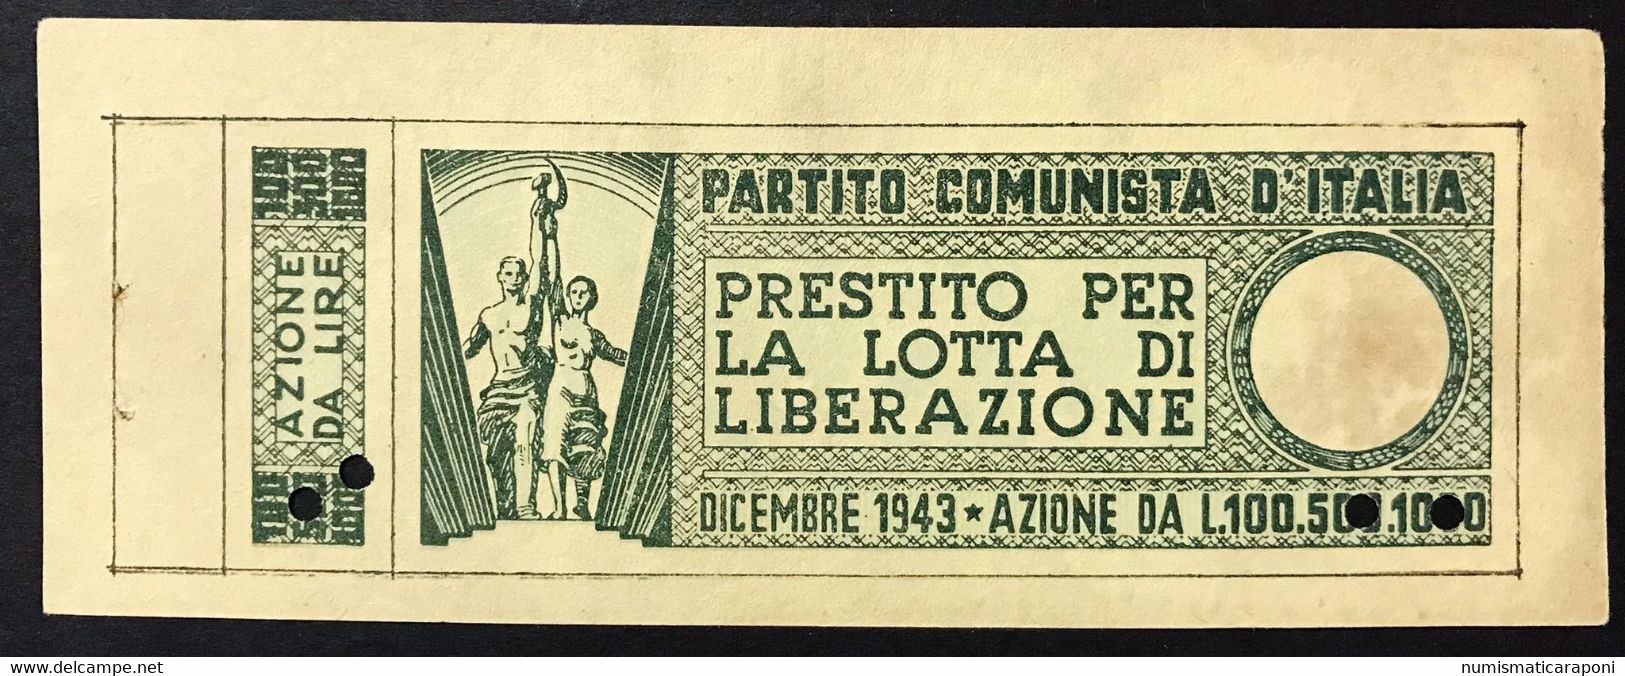 100 LIRE PARTITO COMUNISTA D'ITALIA LOTTA DI LIBERAZIONE DICEMBRE 1943 Lotto 4166 - Occupation Alliés Seconde Guerre Mondiale